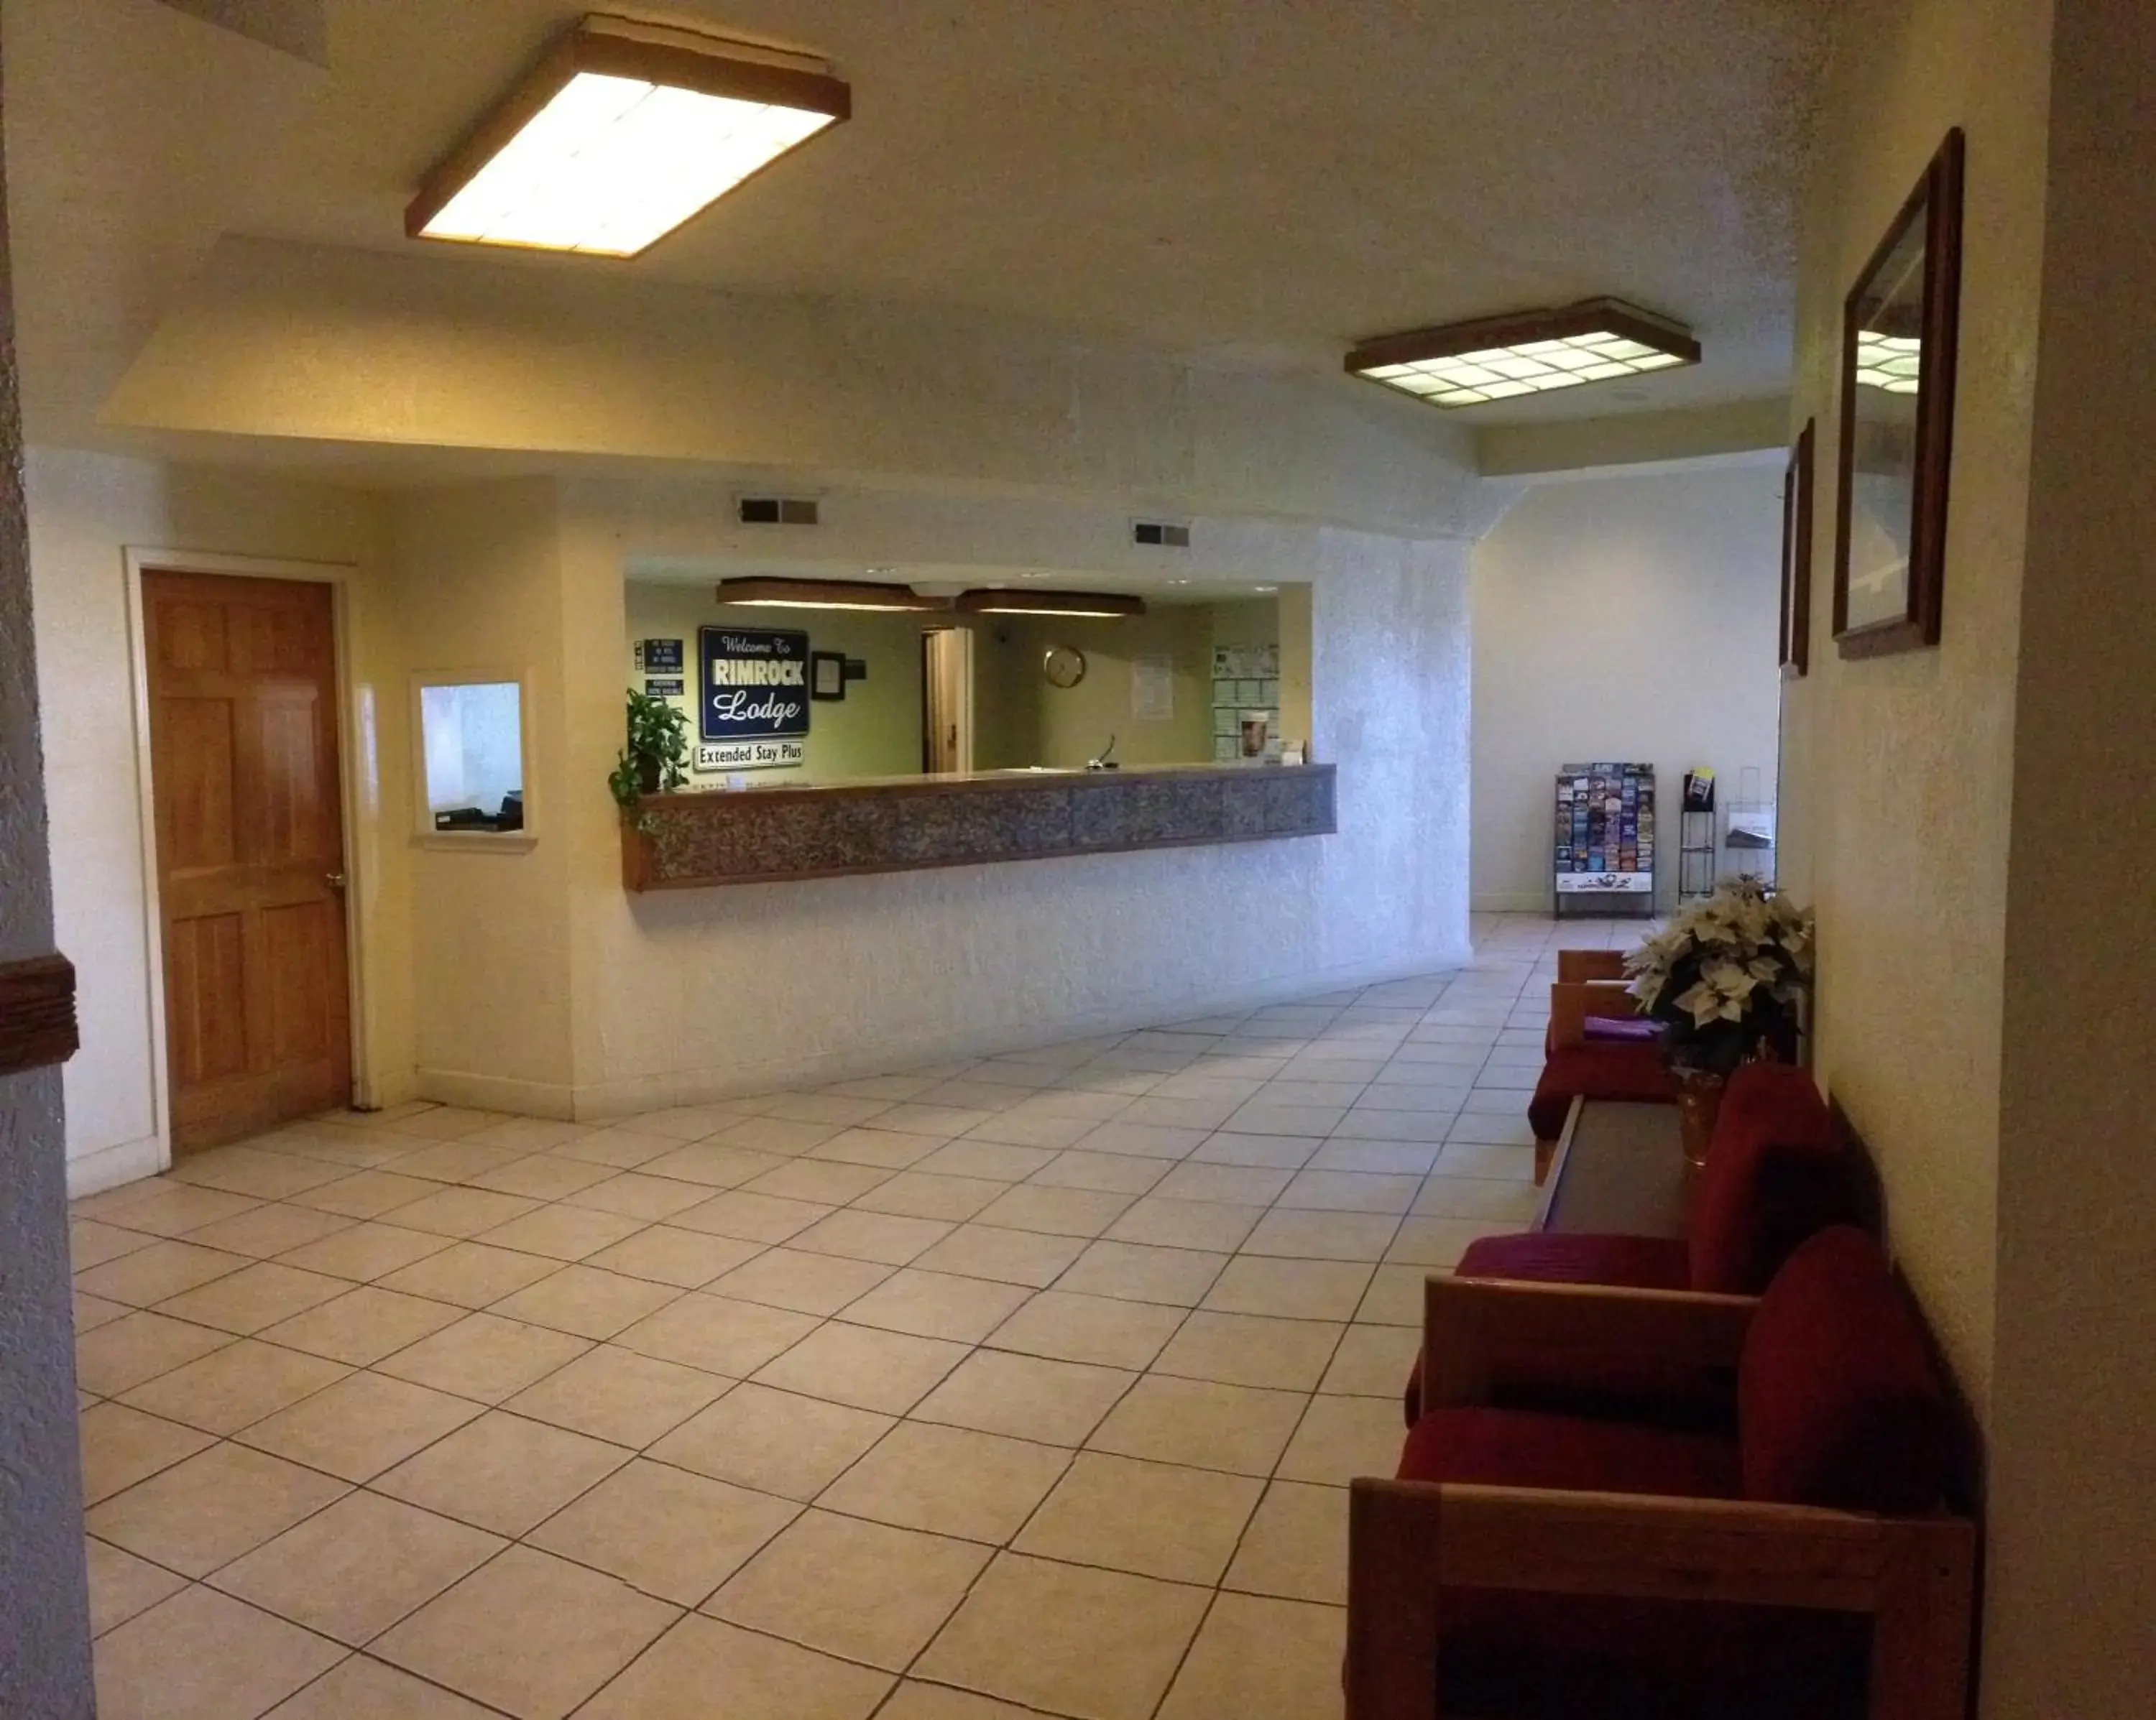 Lobby or reception, Lobby/Reception in Travelodge by Wyndham Farmington Hwy 64